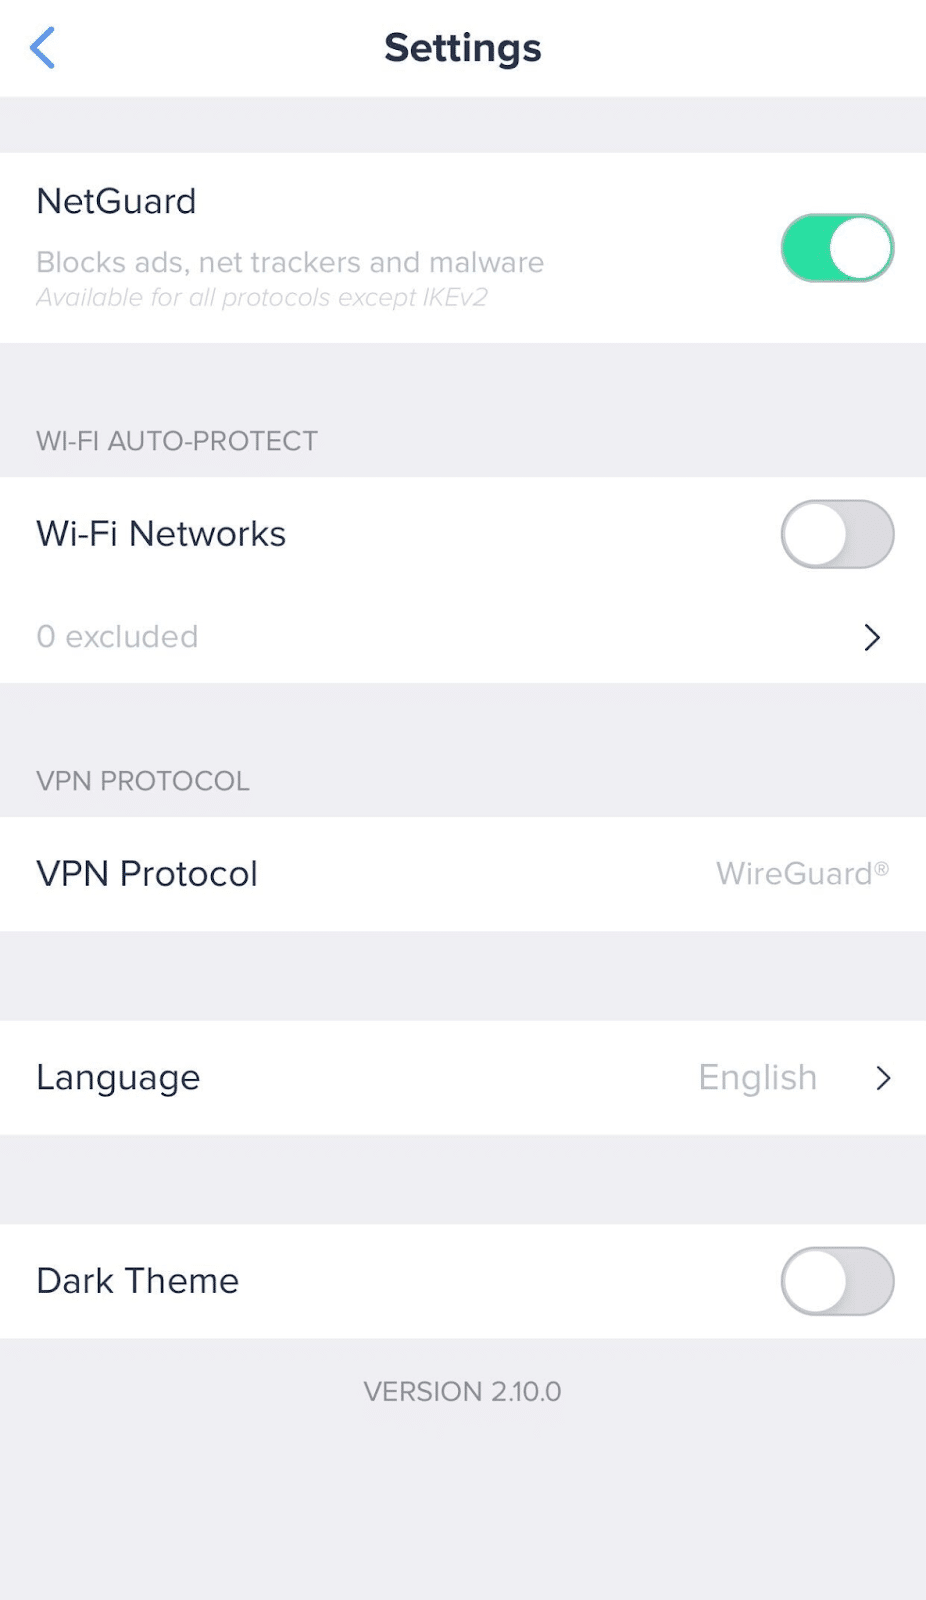 VeePN settings on iOS